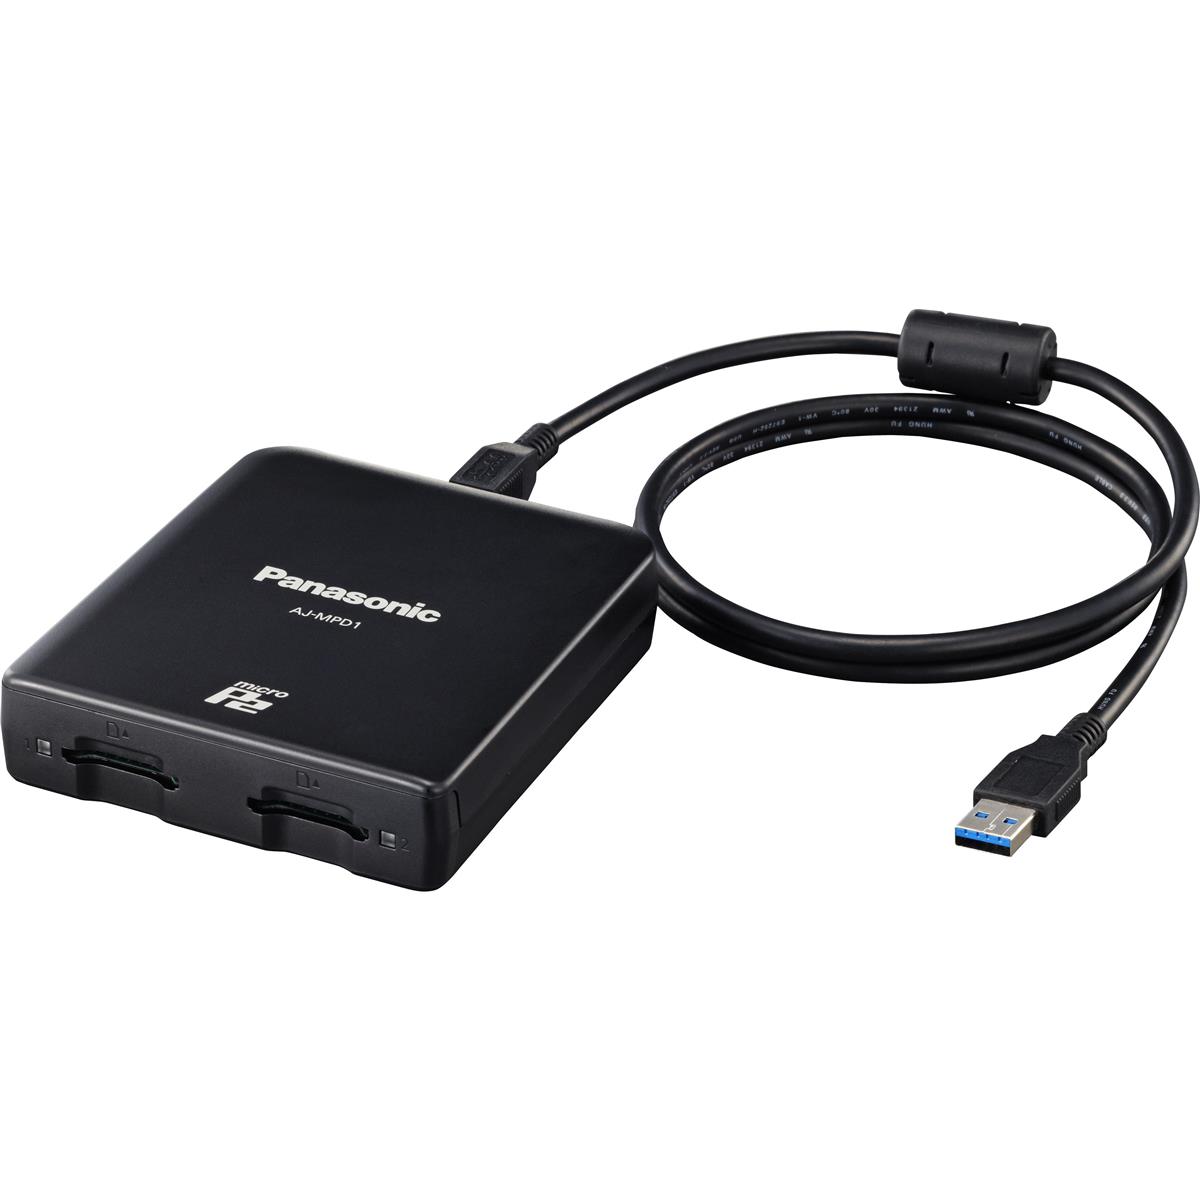 MicroP2 Drive USB 3.0 Card Reader - Panasonic AJ-MPD1G